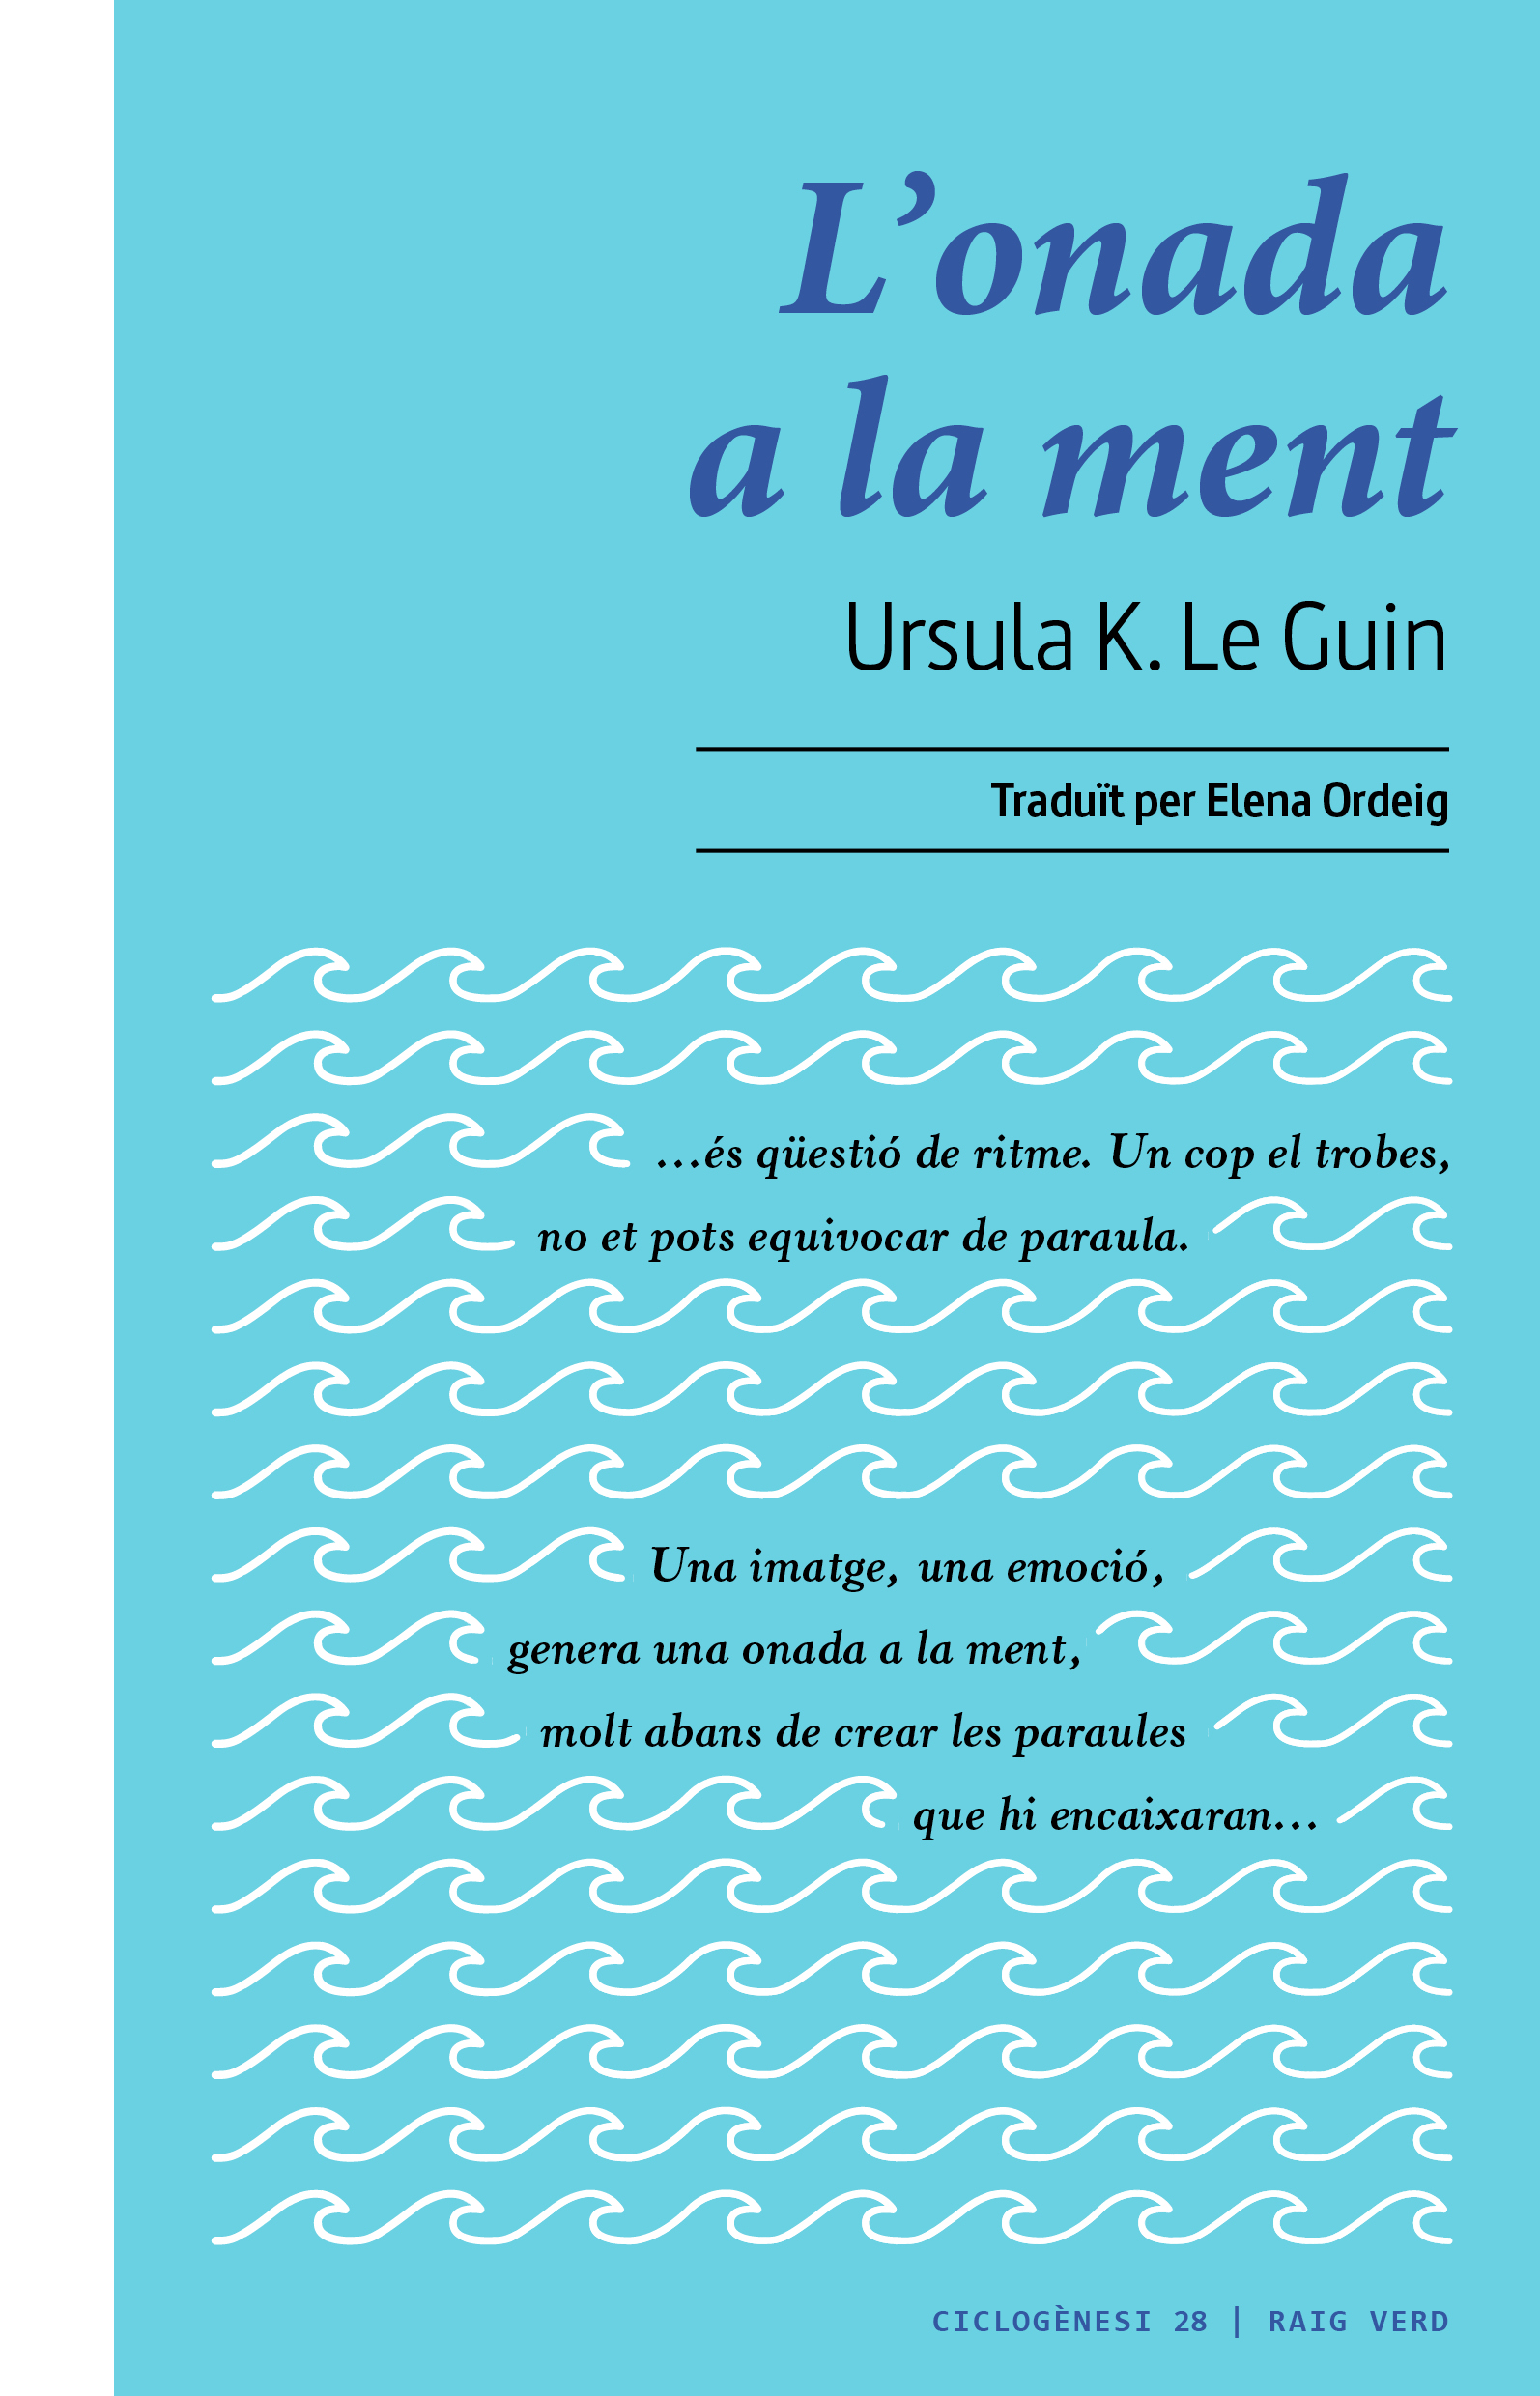 L’ONADA A LA MENT - Ursula K. Le Guin